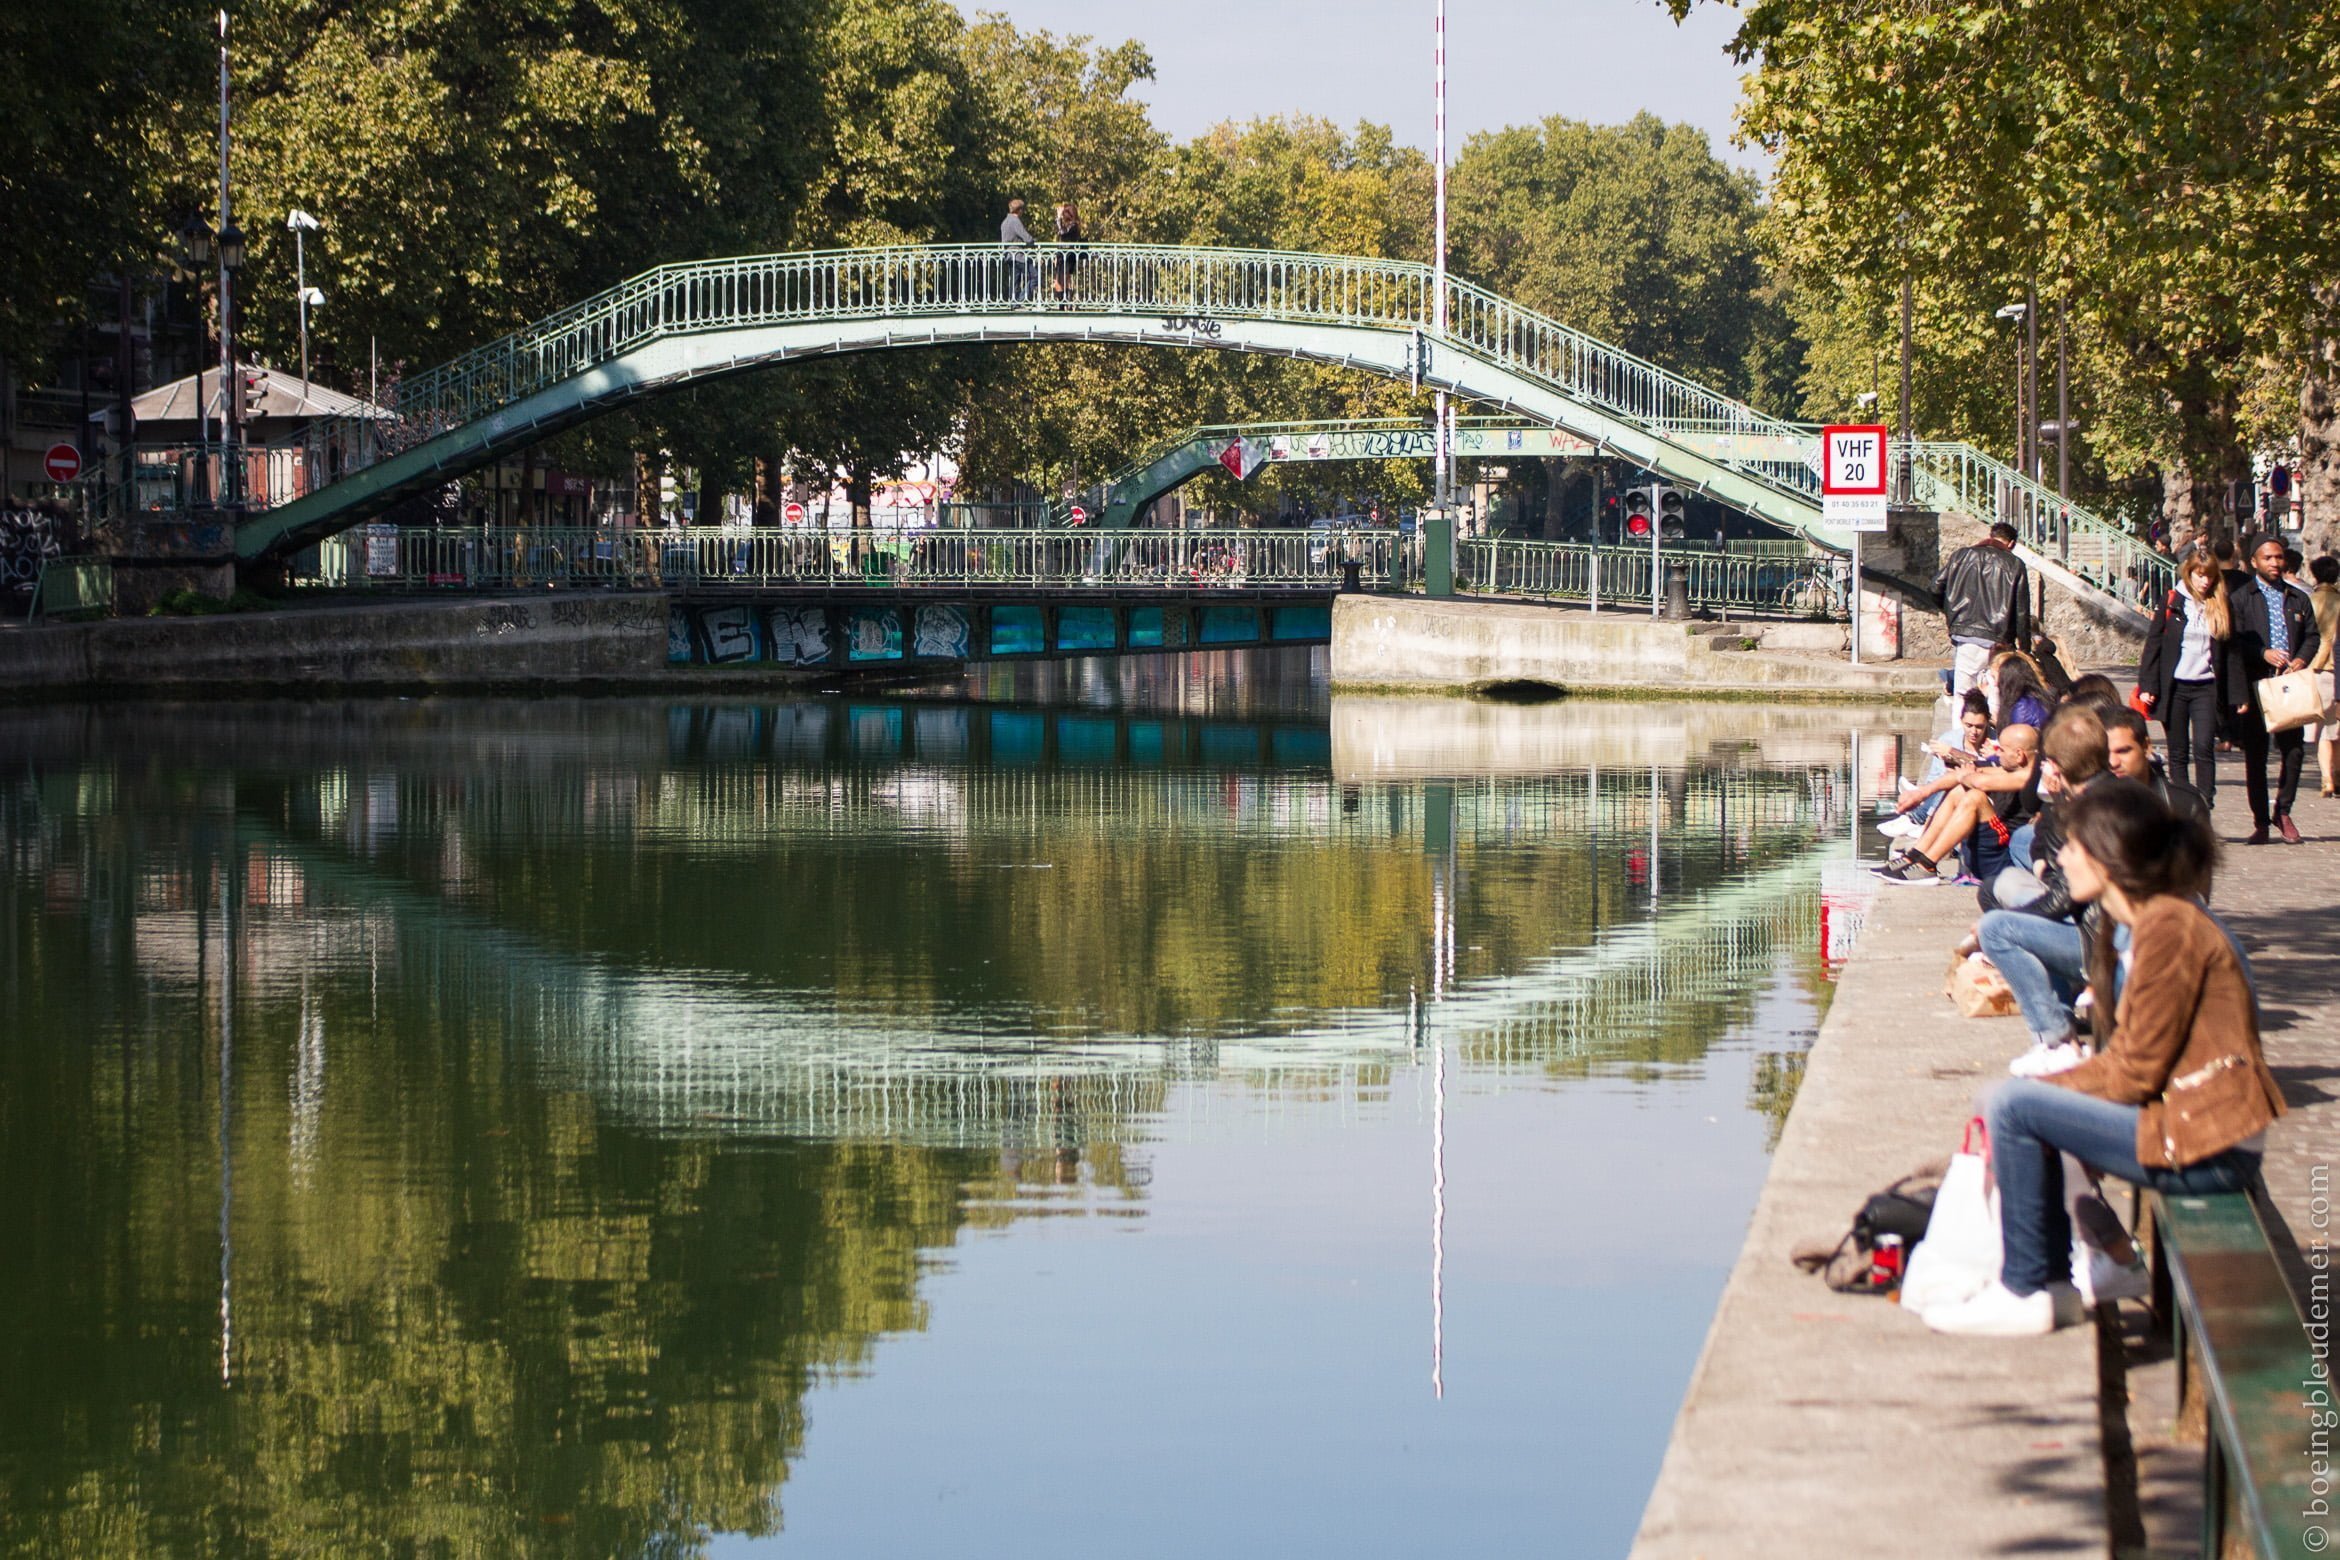 week-ends oisifs des parisiens: abords du canal Saint-Martin